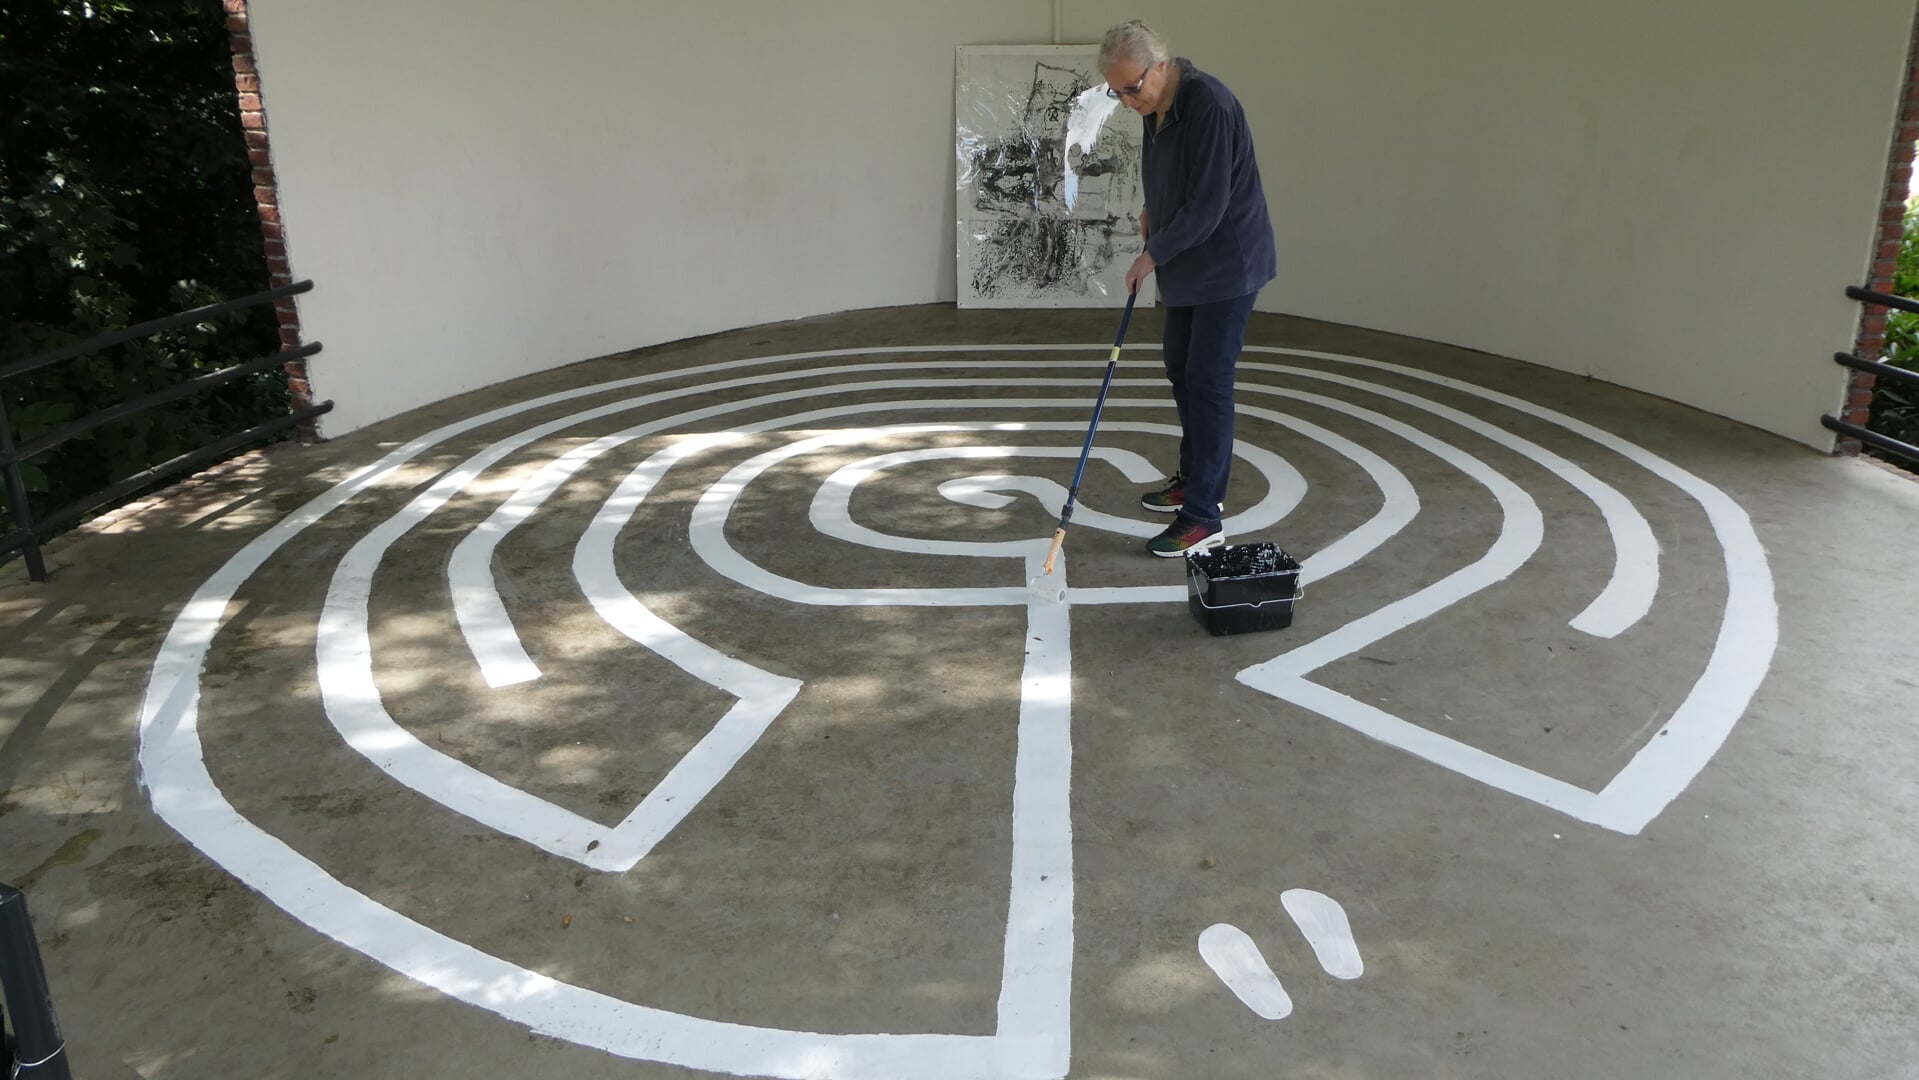 Speciaal voor KunstOogst maakte Bea Verheul een labyrint in de muziekkoepel vlak voor haar woonhuis. Foto: Jan Hendriksen